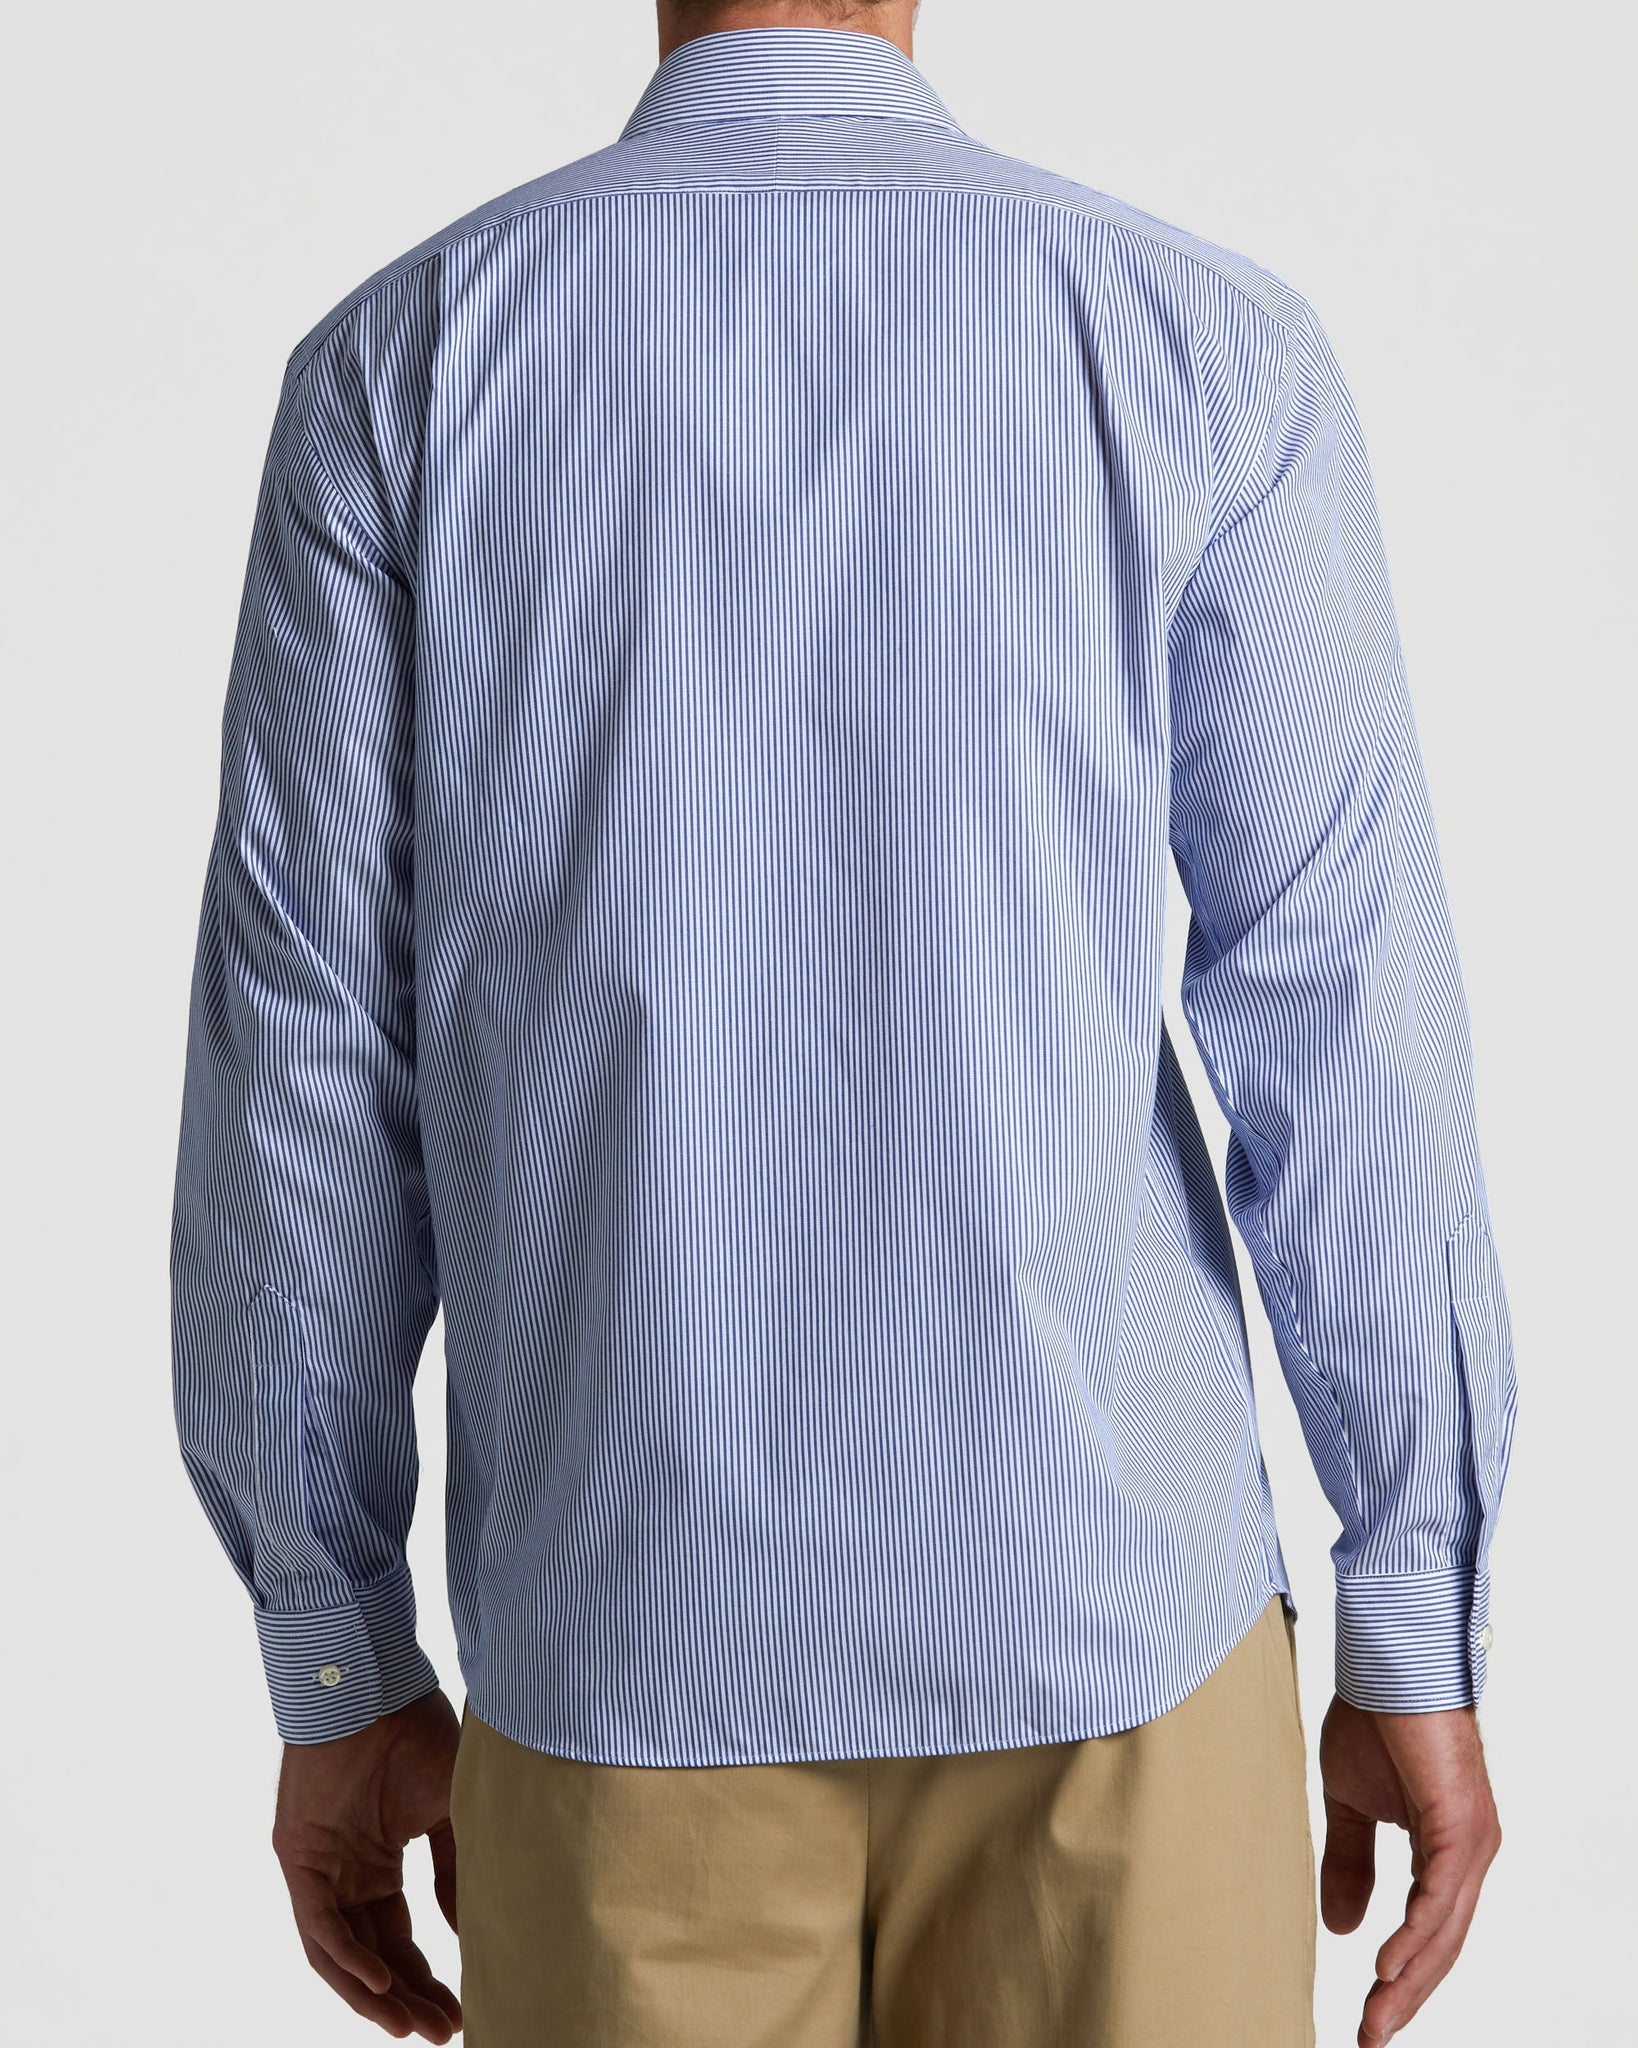 MagnaClick Long Sleeve Striped Shirt